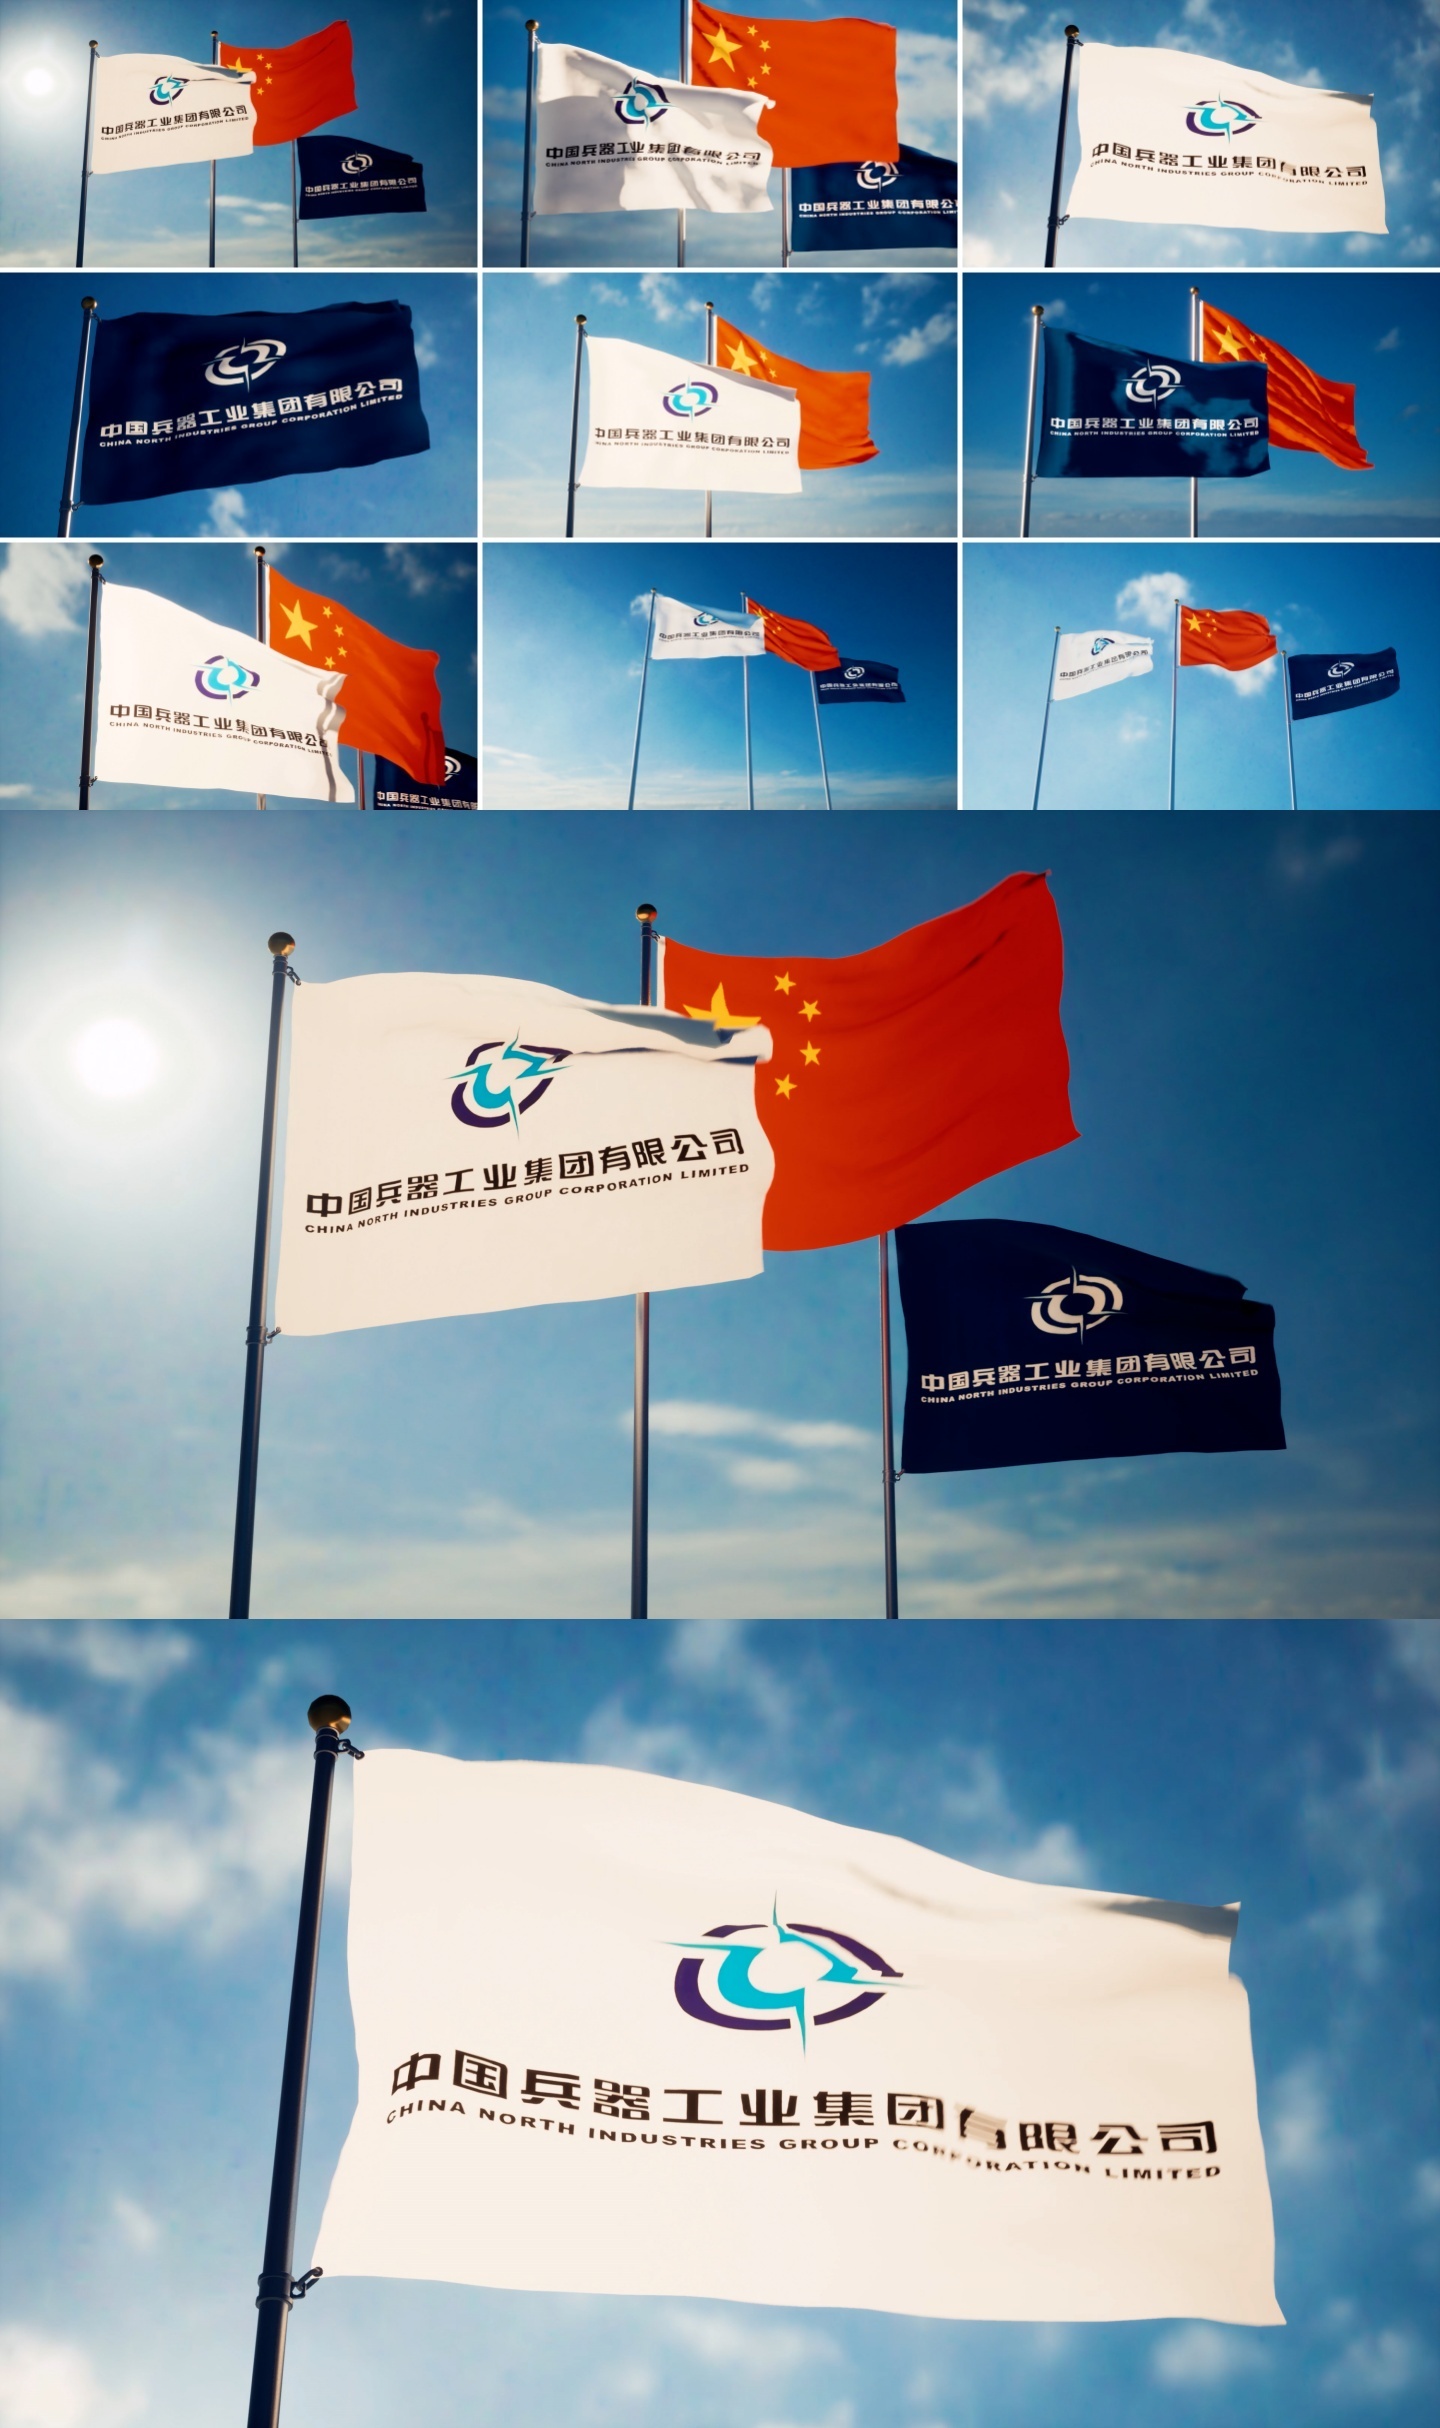 中国兵器集团旗帜飘扬中国兵器工业集团旗帜